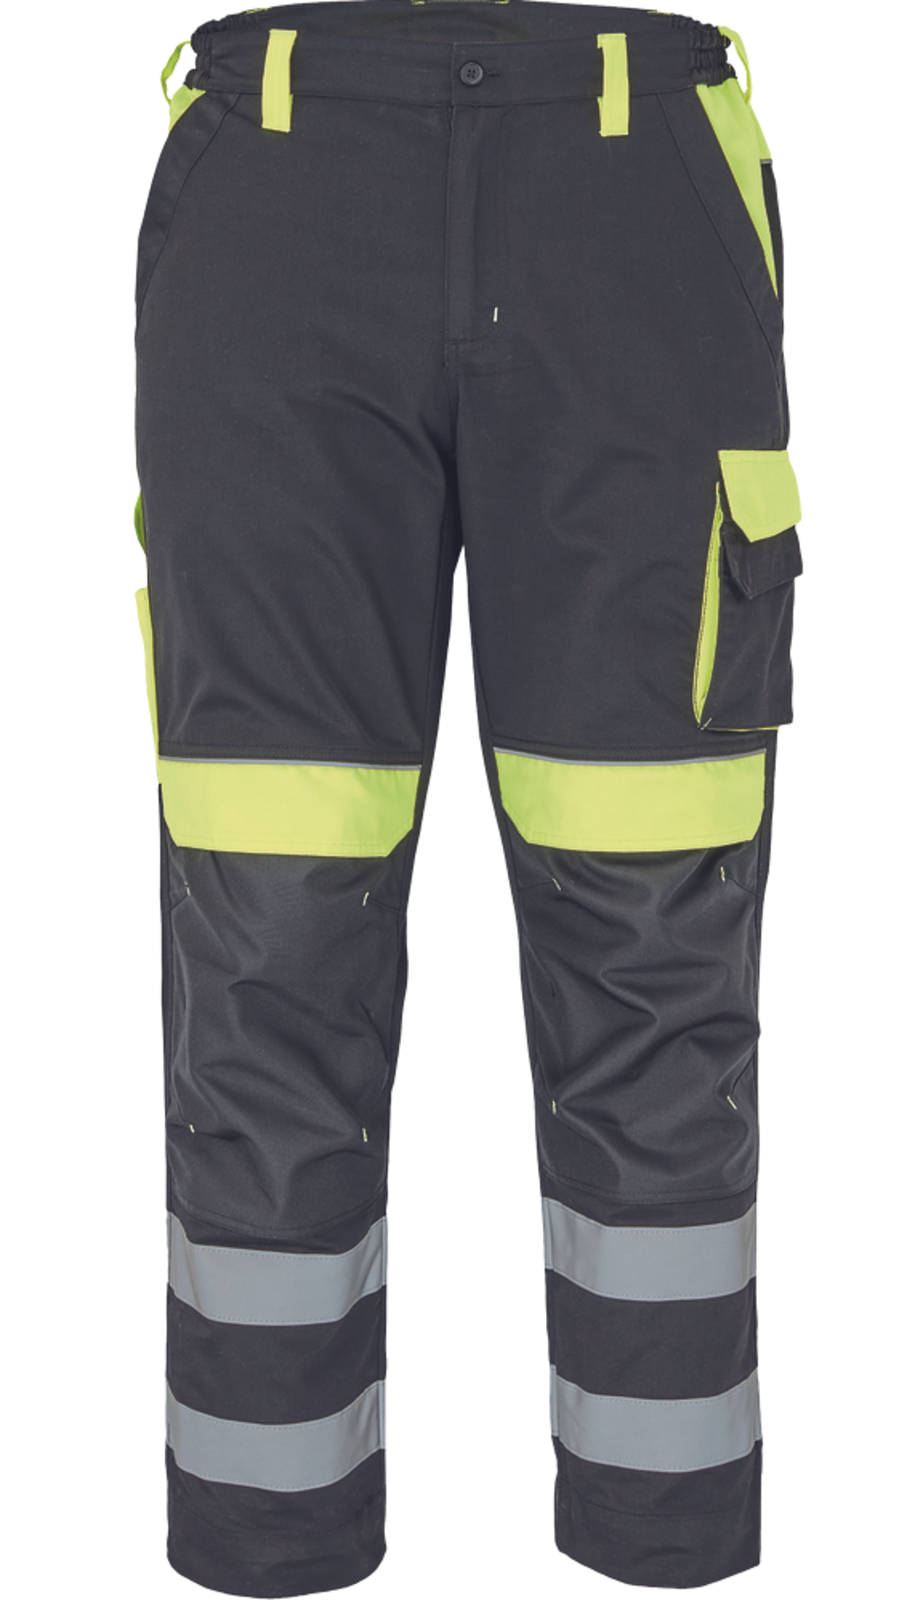 Pracovné nohavice s reflexnými pruhmi Cerva Max Vivo Reflex  - veľkosť: 50, farba: čierna/žltá